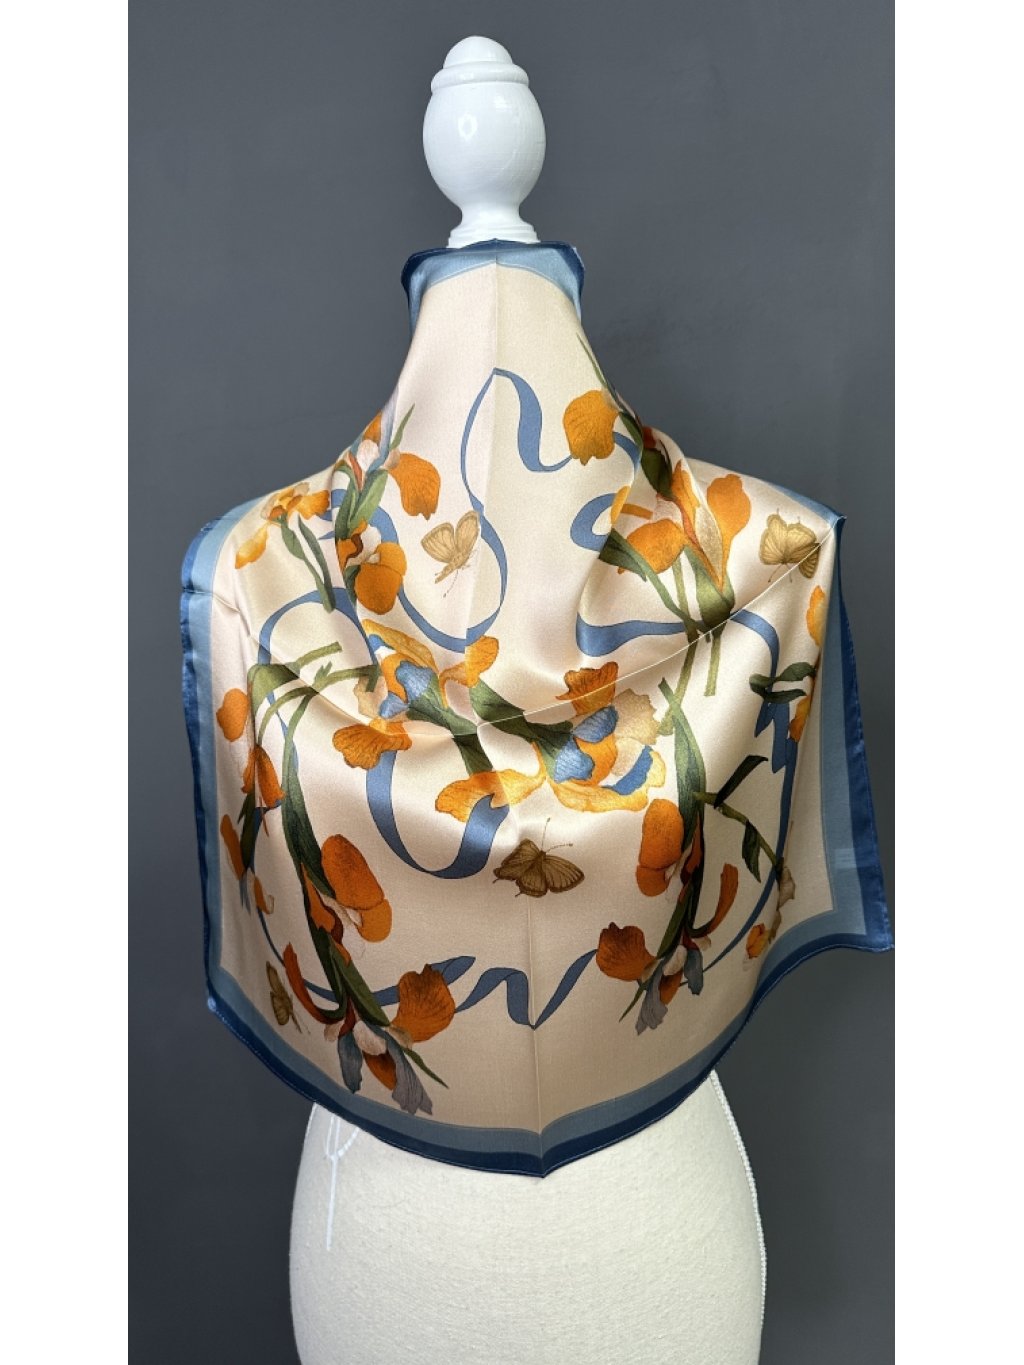 Šátek hedvábí béžový s oranžovým květem a modrým okrajem